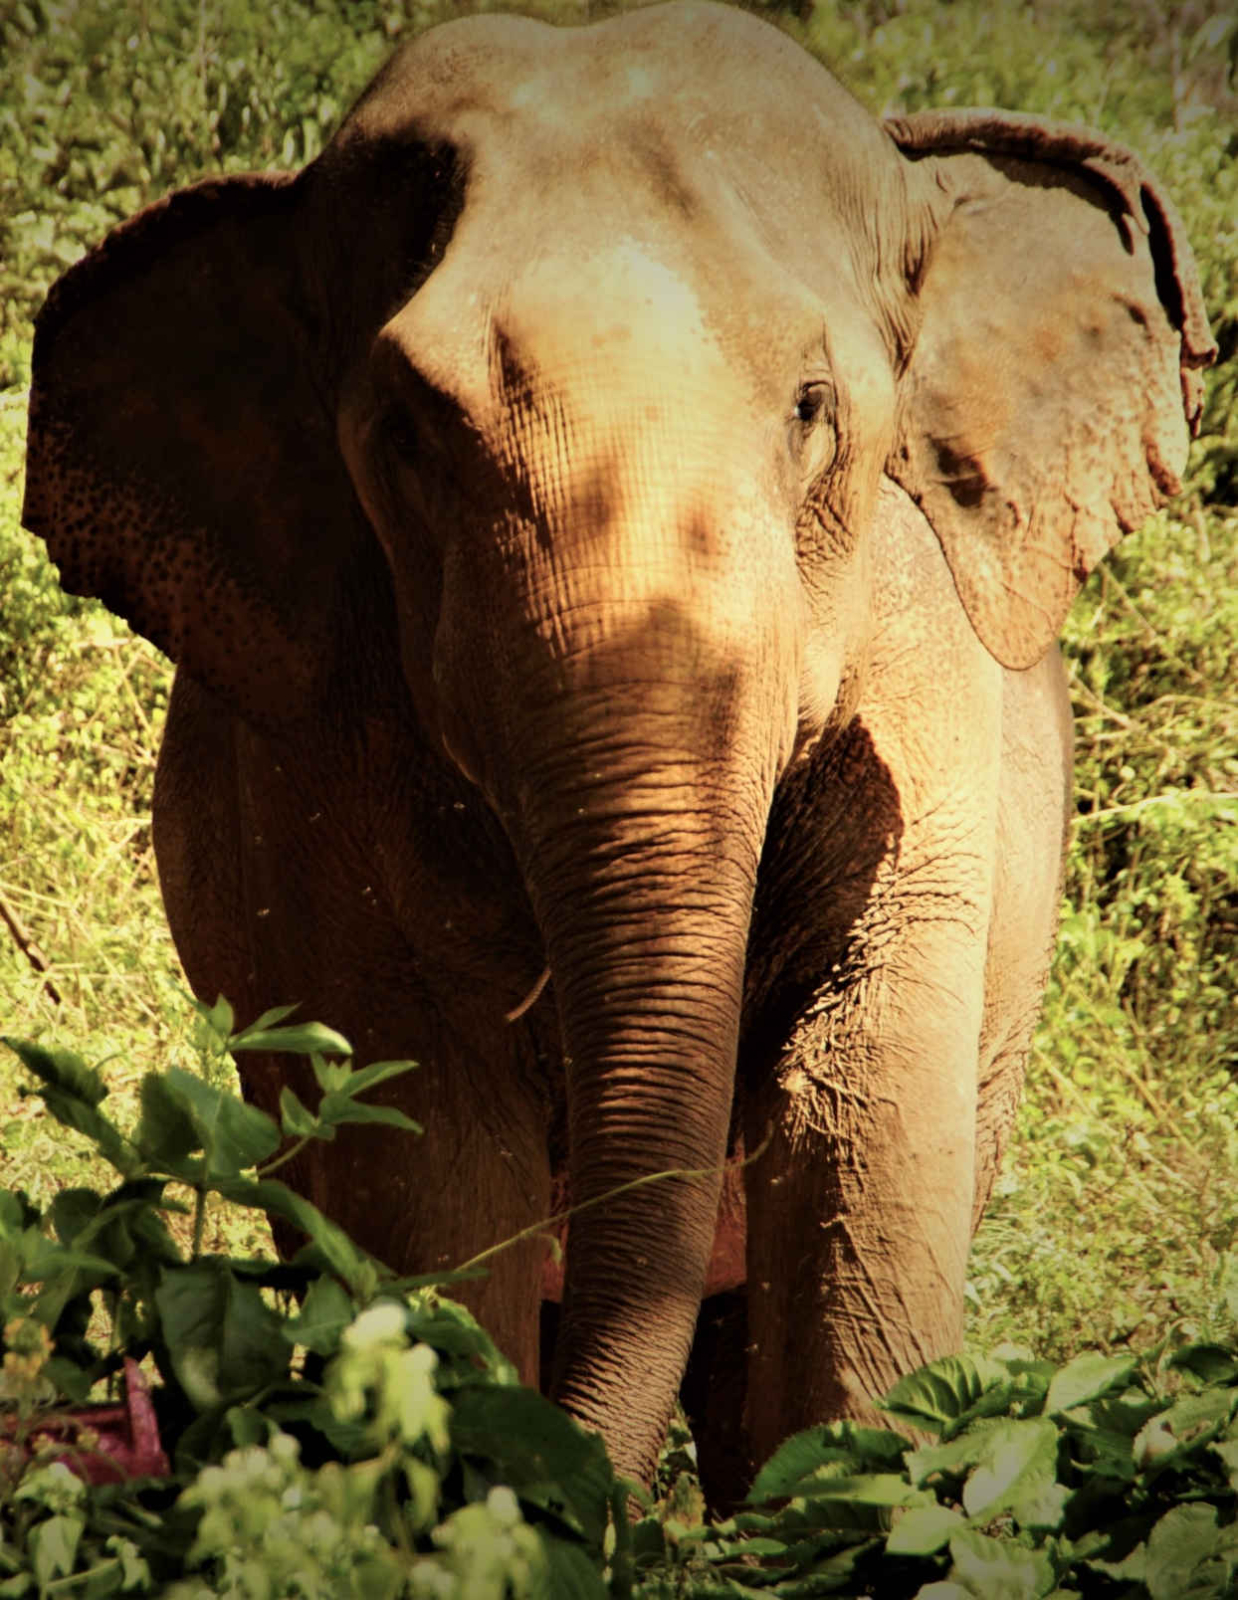 elephant special tours thailand